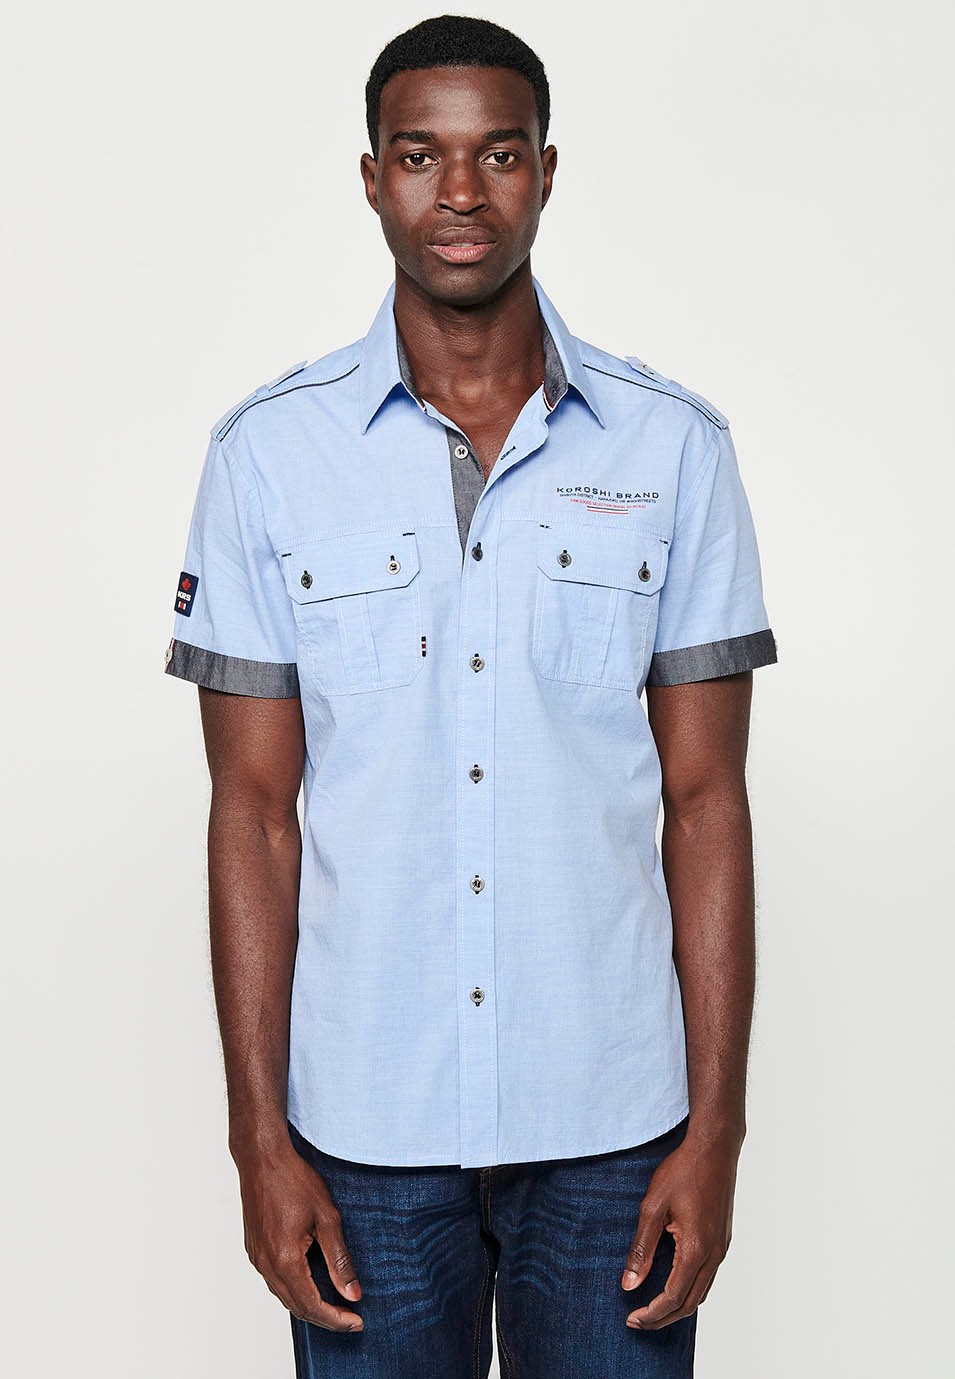 Cotton shirt, short sleeve, shoulder details, blue color for men 2